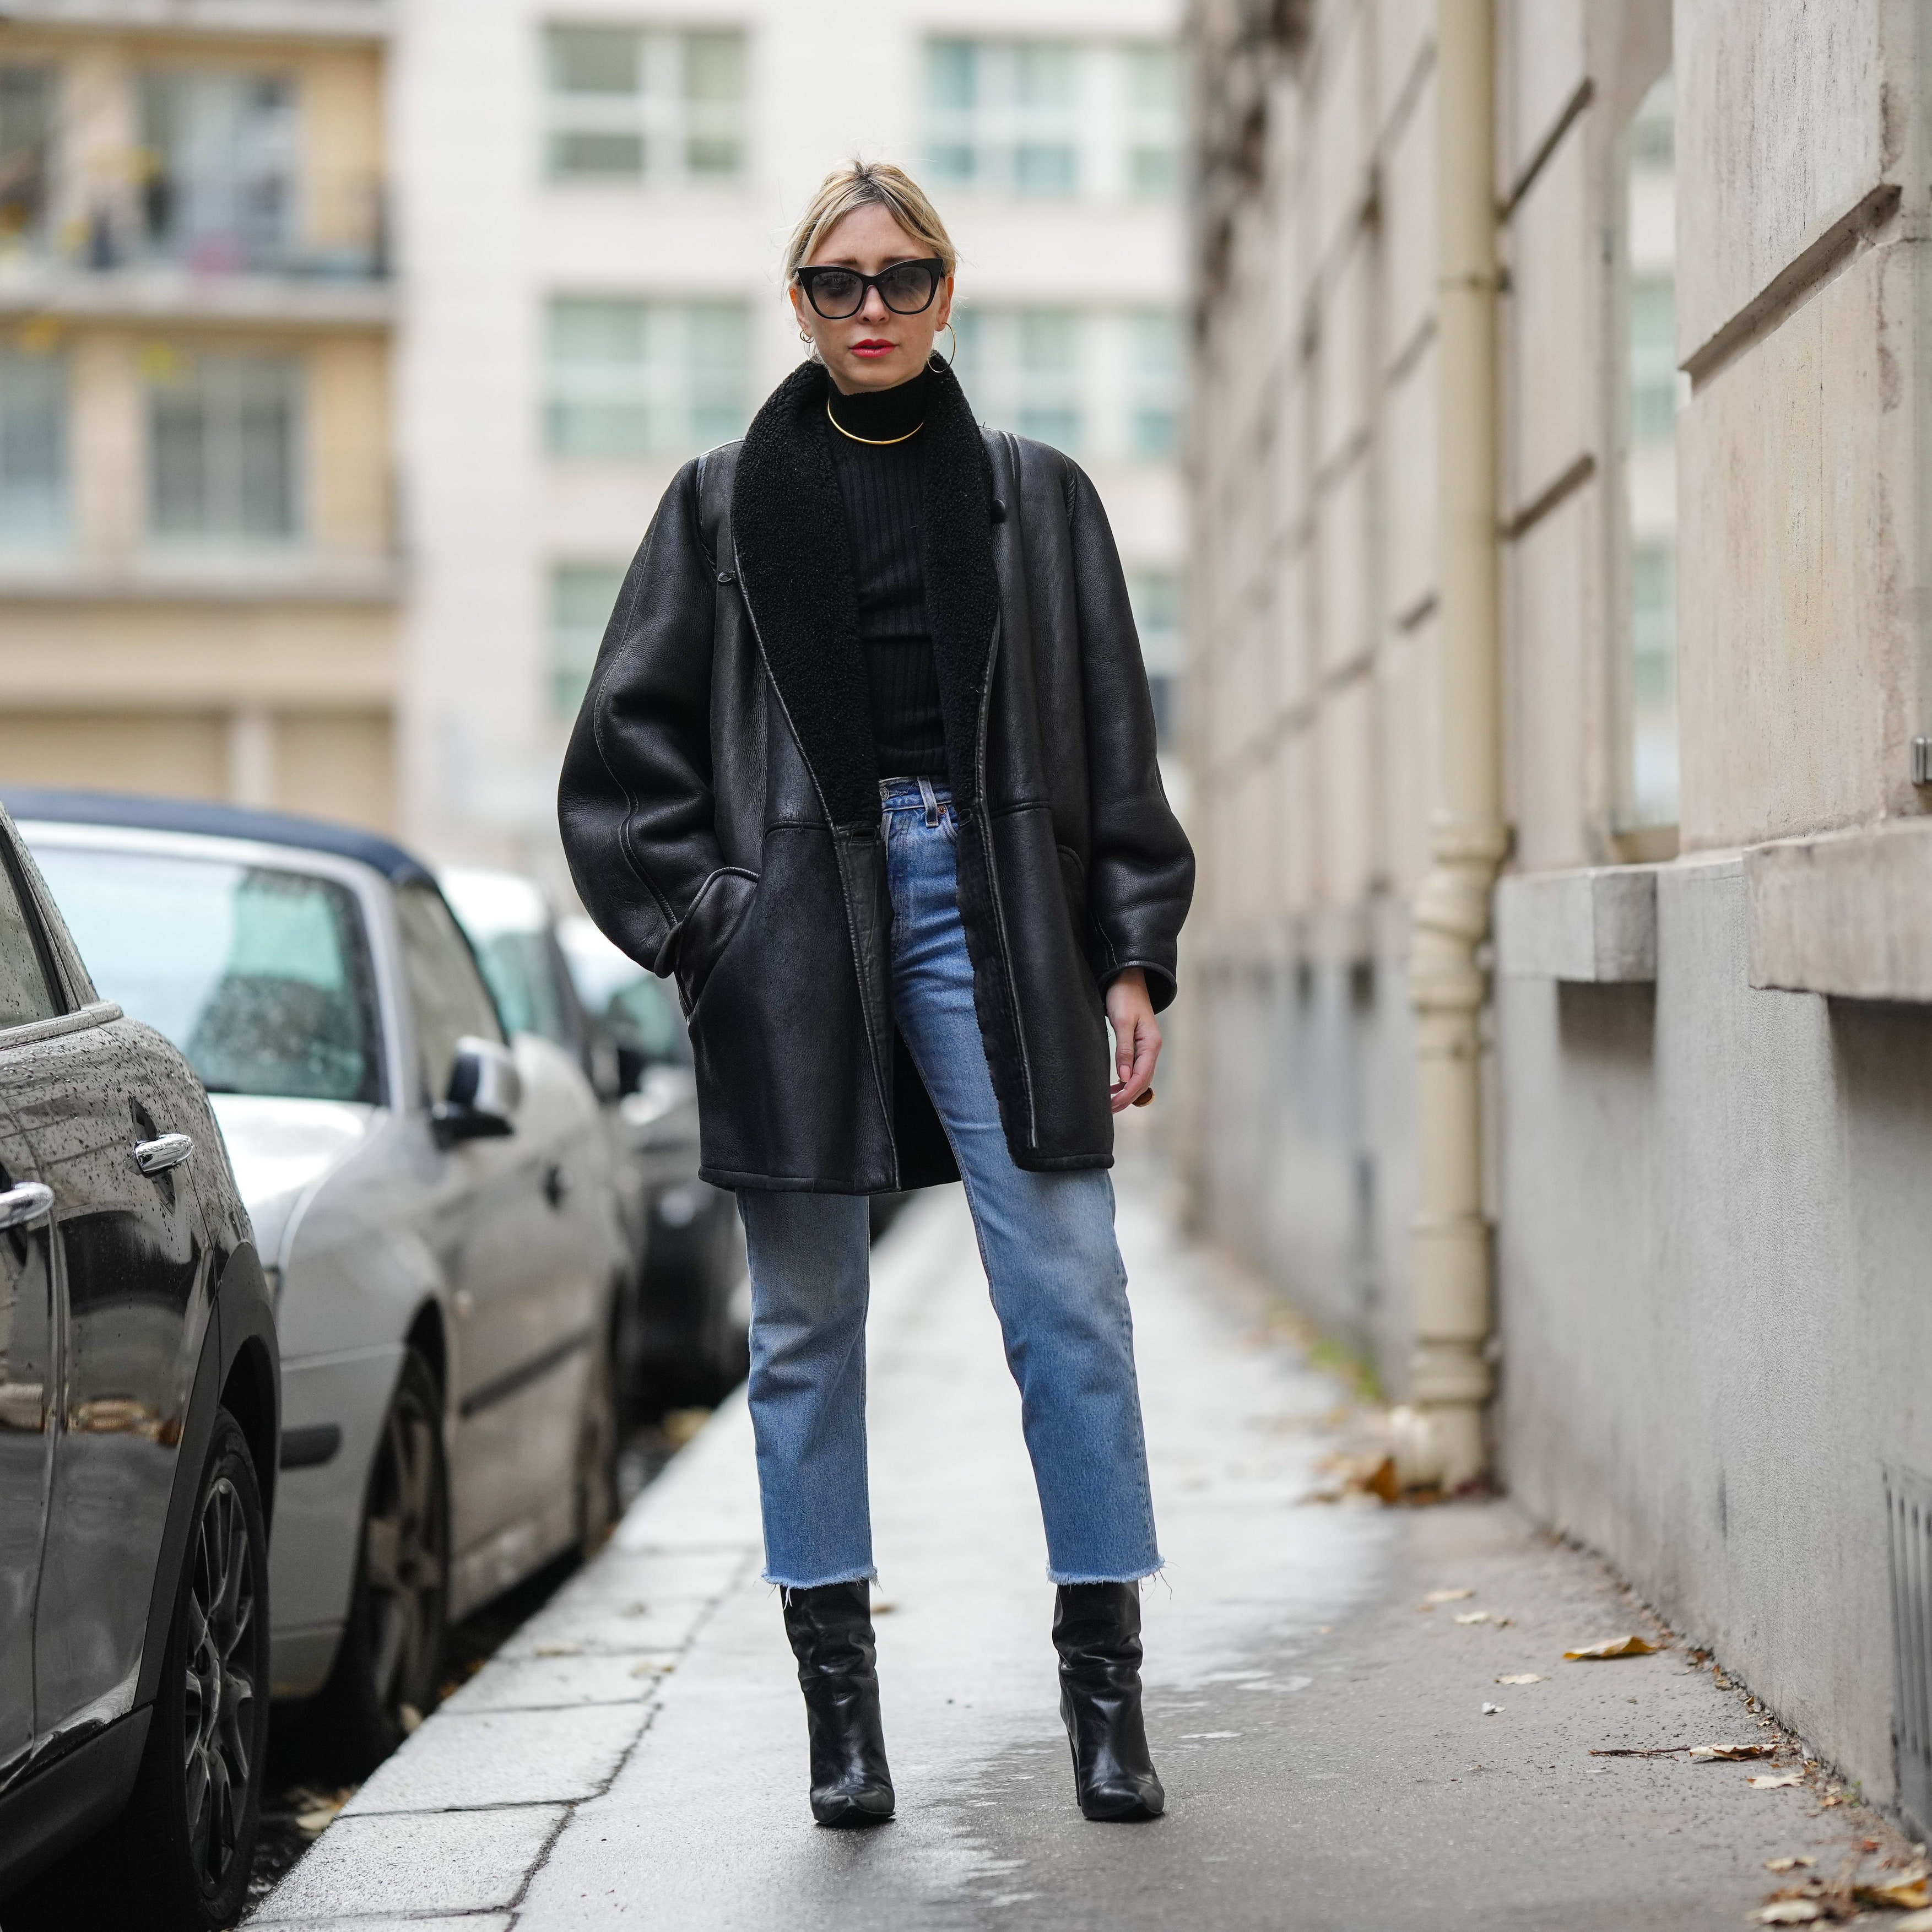 Модные приметы х — джинса, одежда кислотного цвета и челки домиком » malino-v.ru